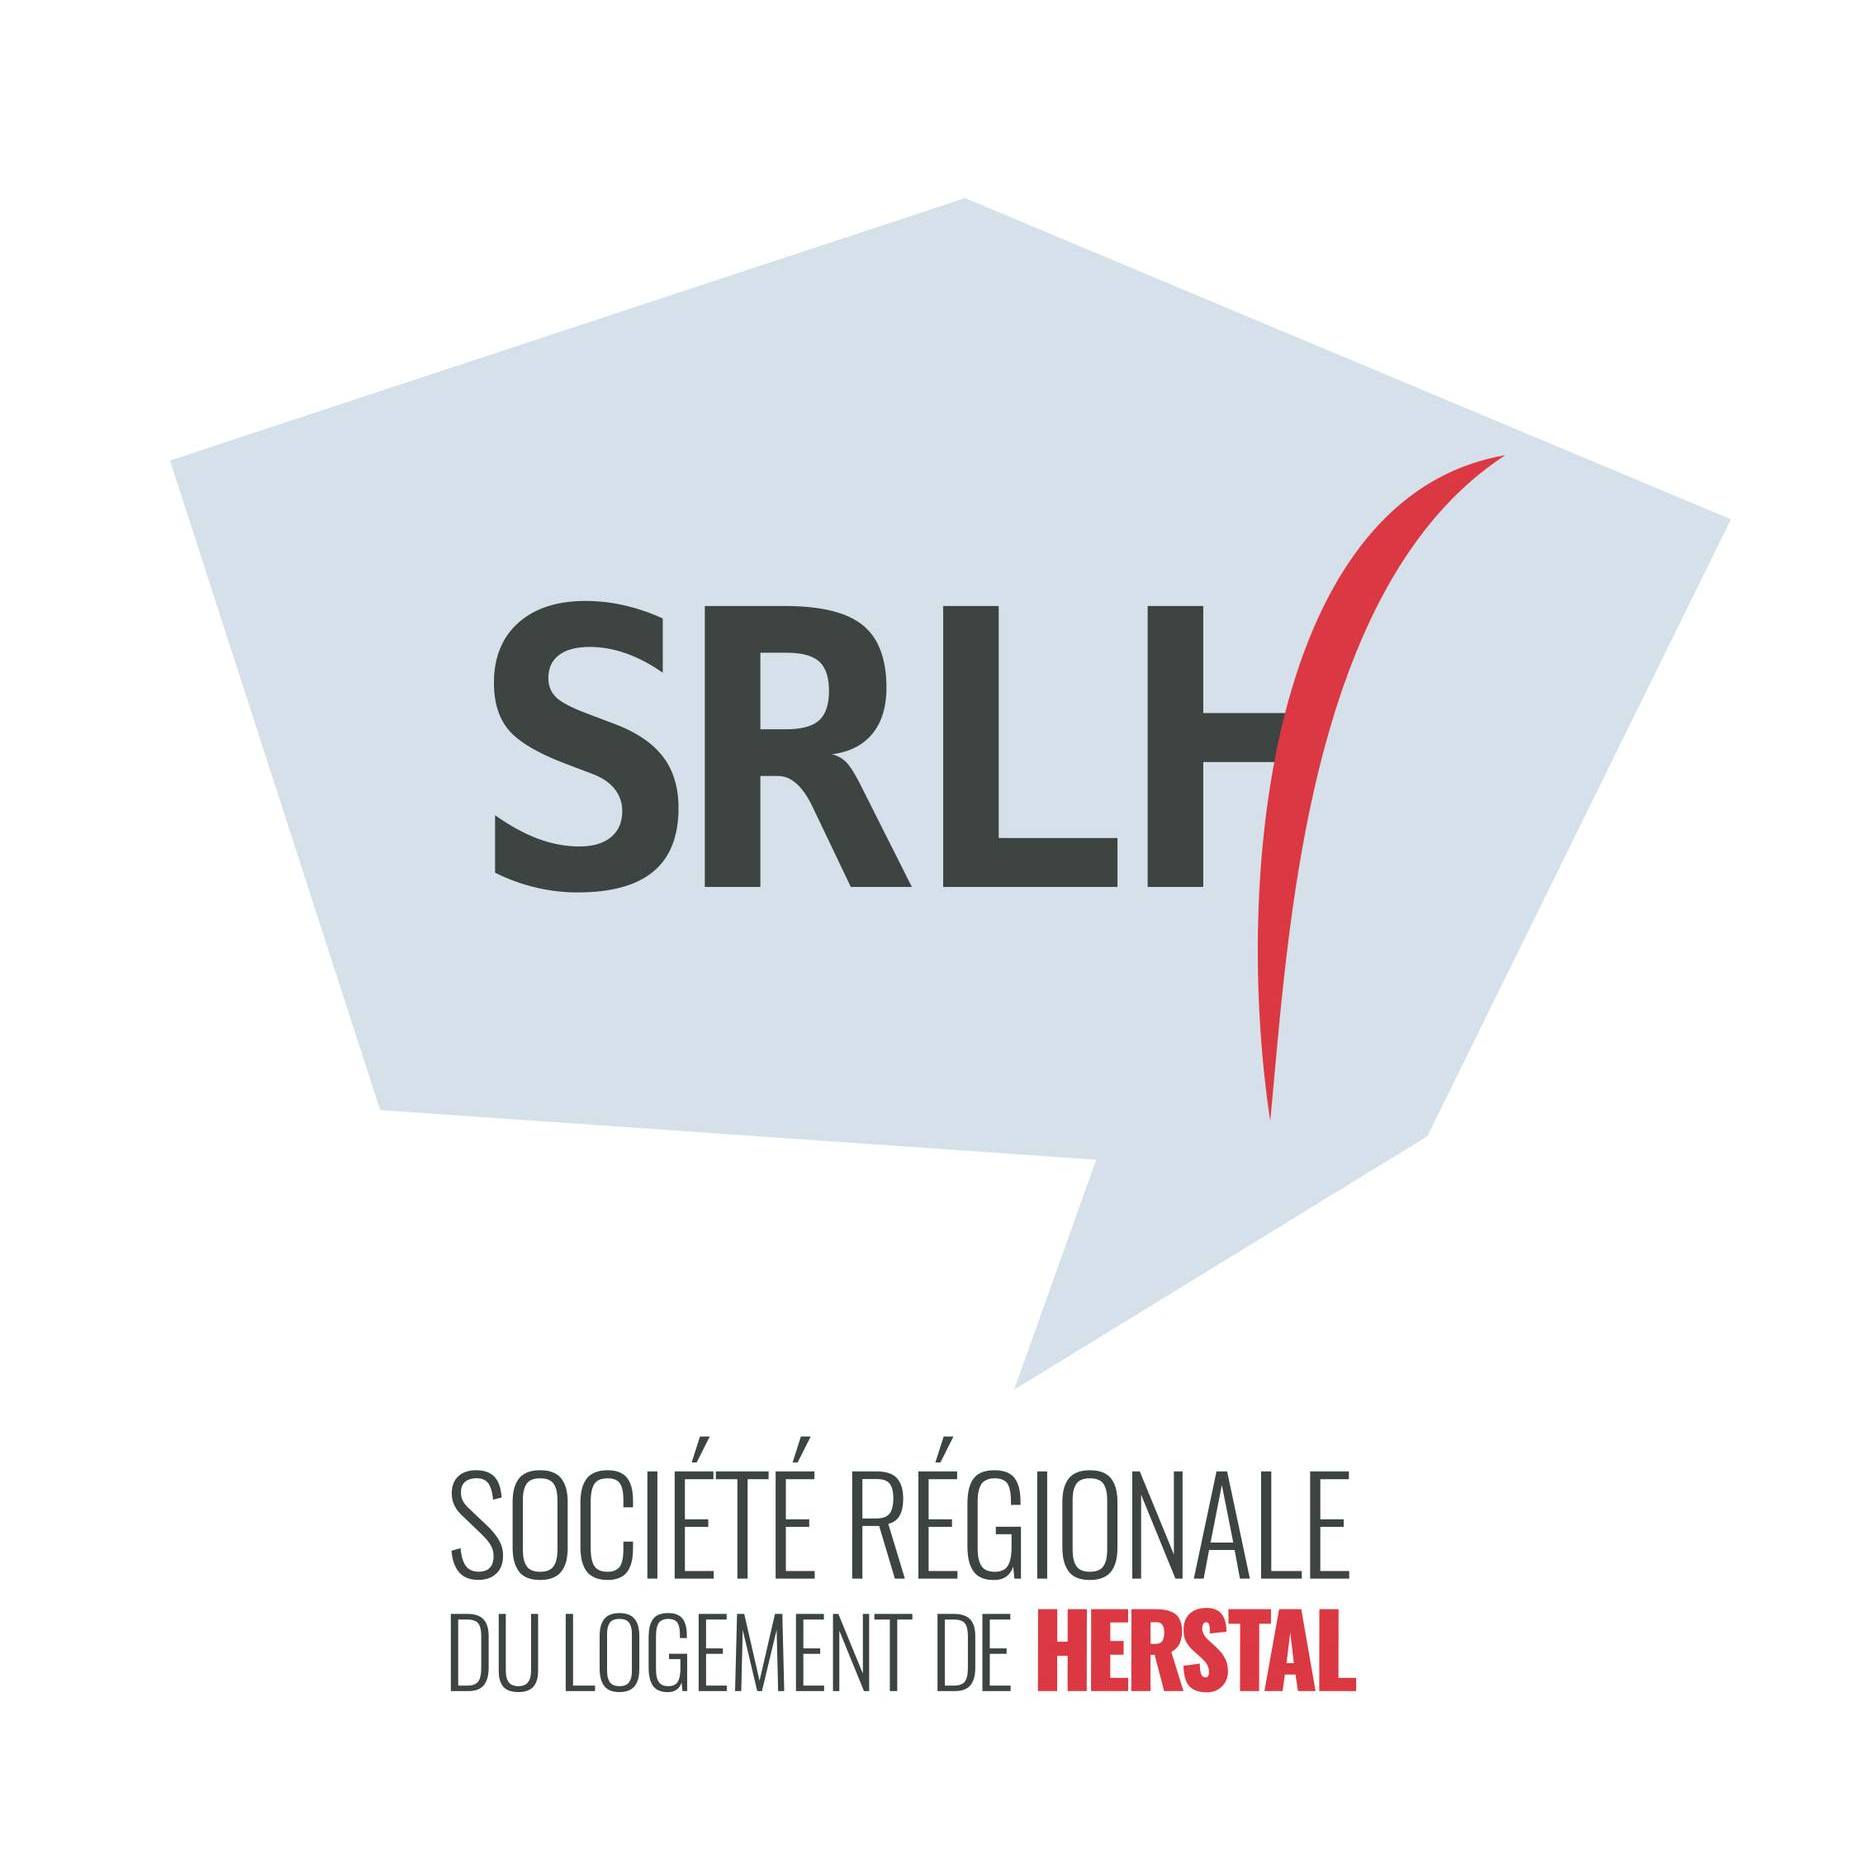 Société régionale du logement de Herstal